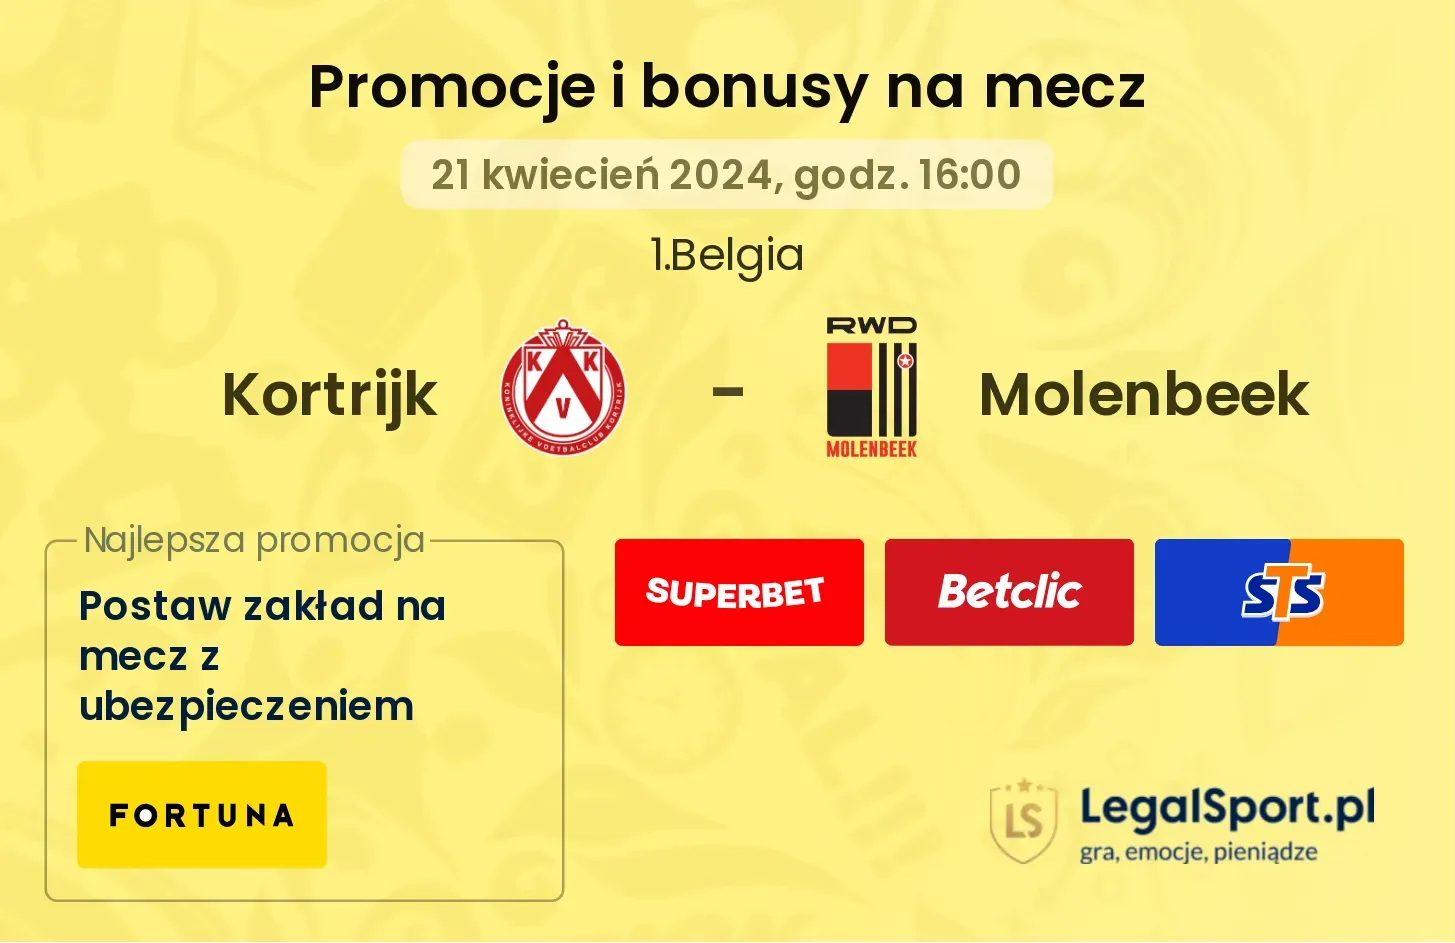 Kortrijk - Molenbeek promocje bonusy na mecz